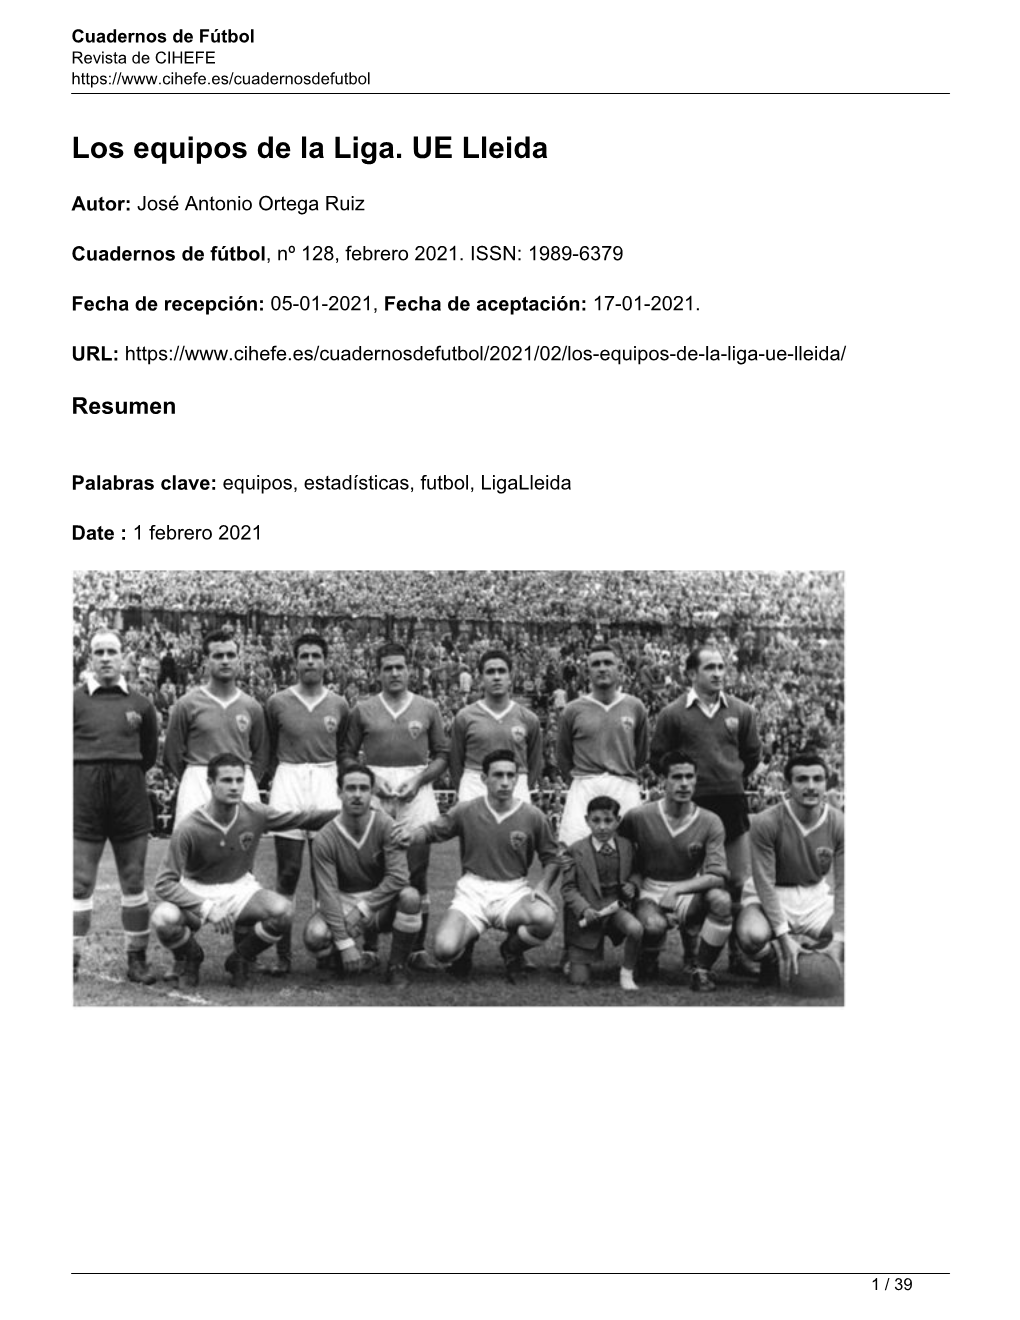 Los Equipos De La Liga. UE Lleida